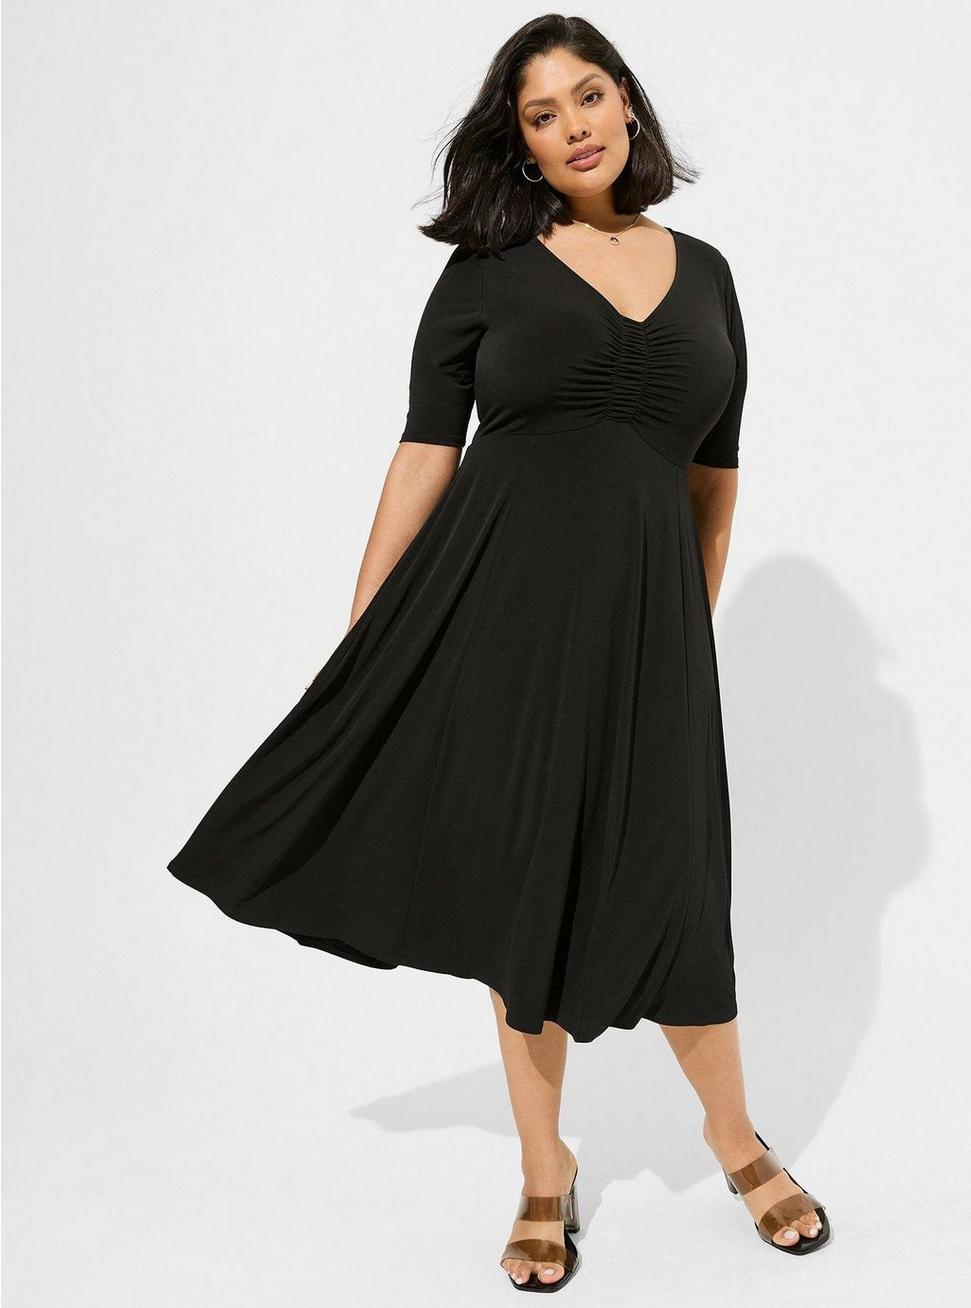 Midi Studio Knit Ruched Front Dress, DEEP BLACK, hi-res